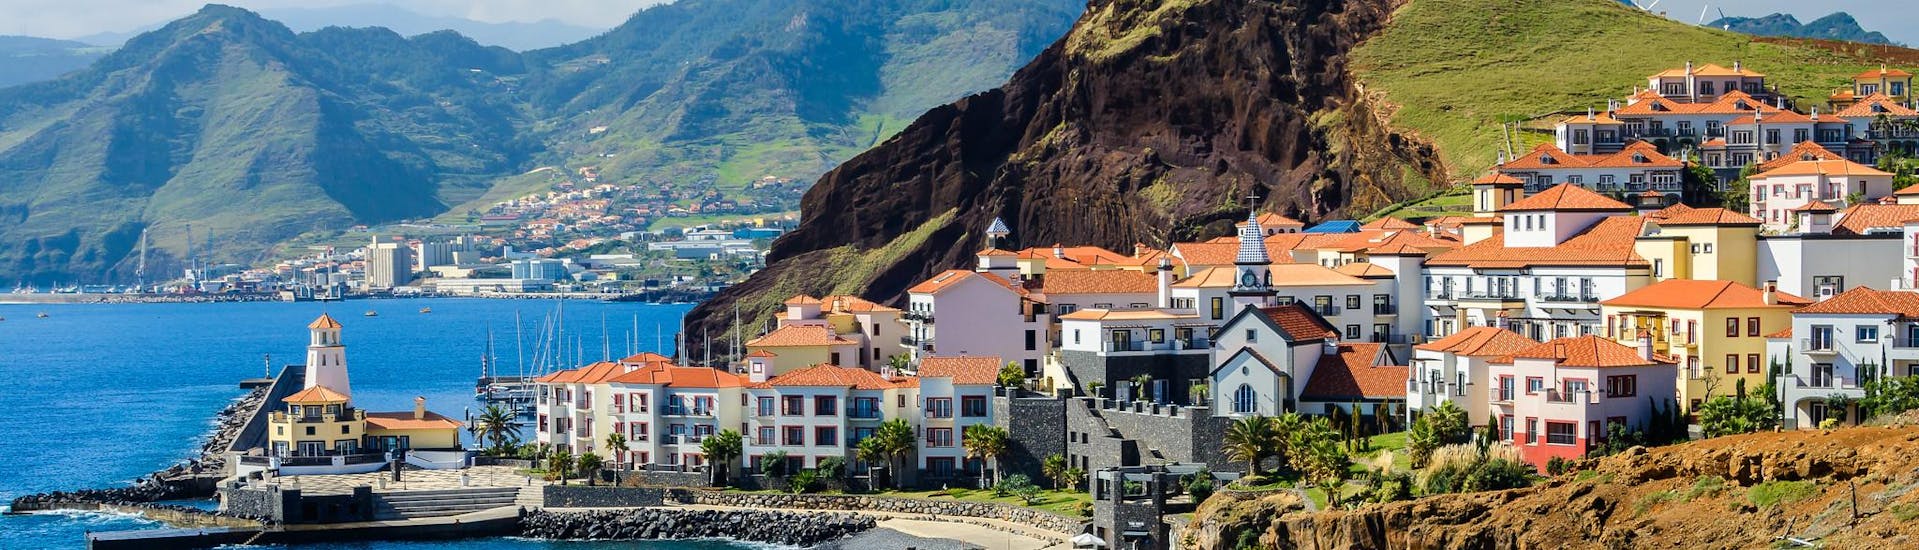 Ausblick auf ein Dorf auf Madeira, einer wunderschönen Insel, die man mit einer Bootstour entdecken kann.